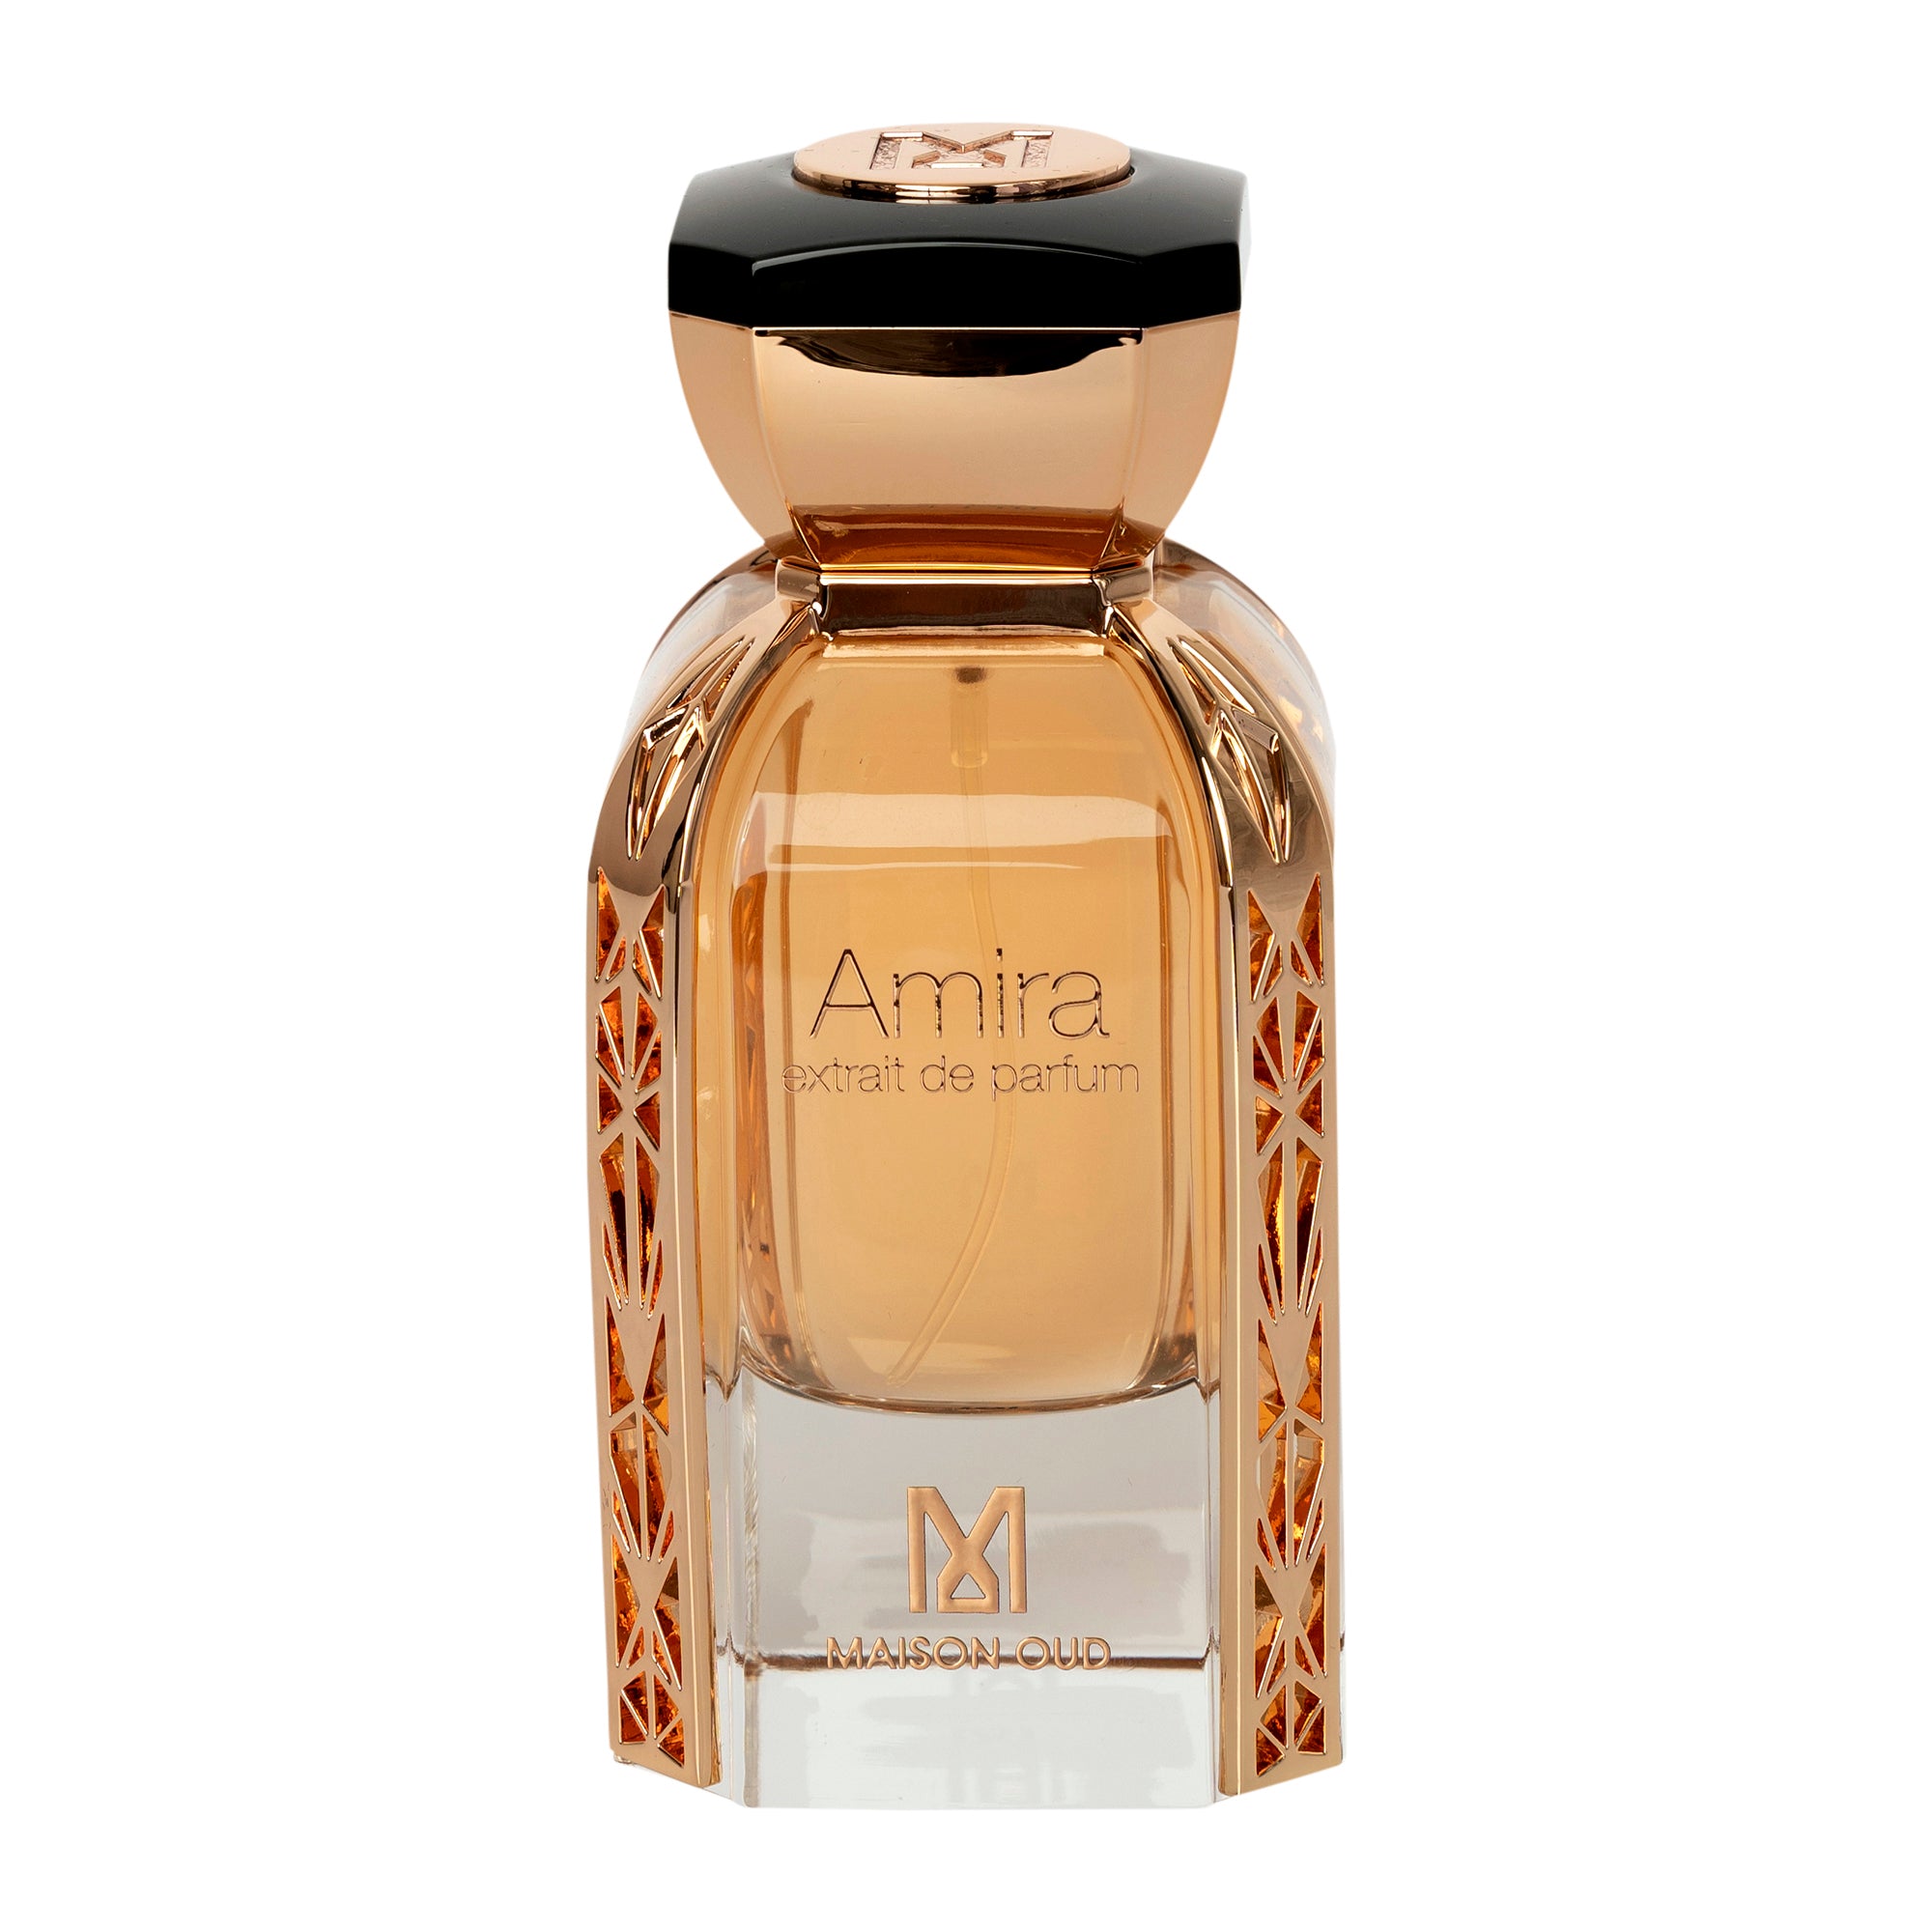 Maison Oud Amira Extrait De Parfum 75ml